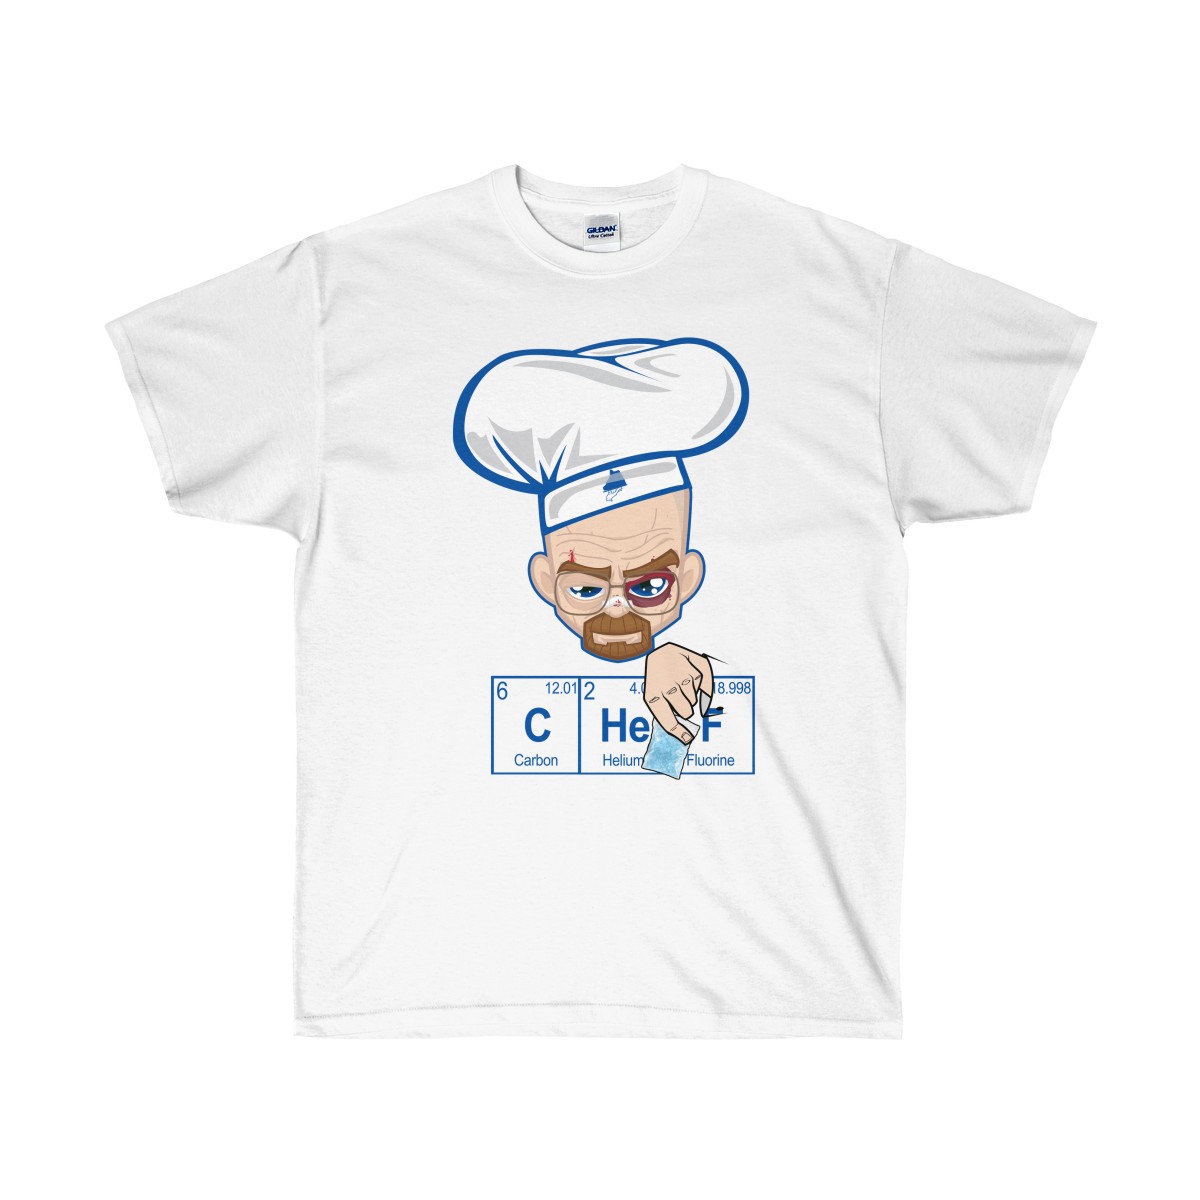 AJ1 Royal Meth Vs Chef T-Shirt v2